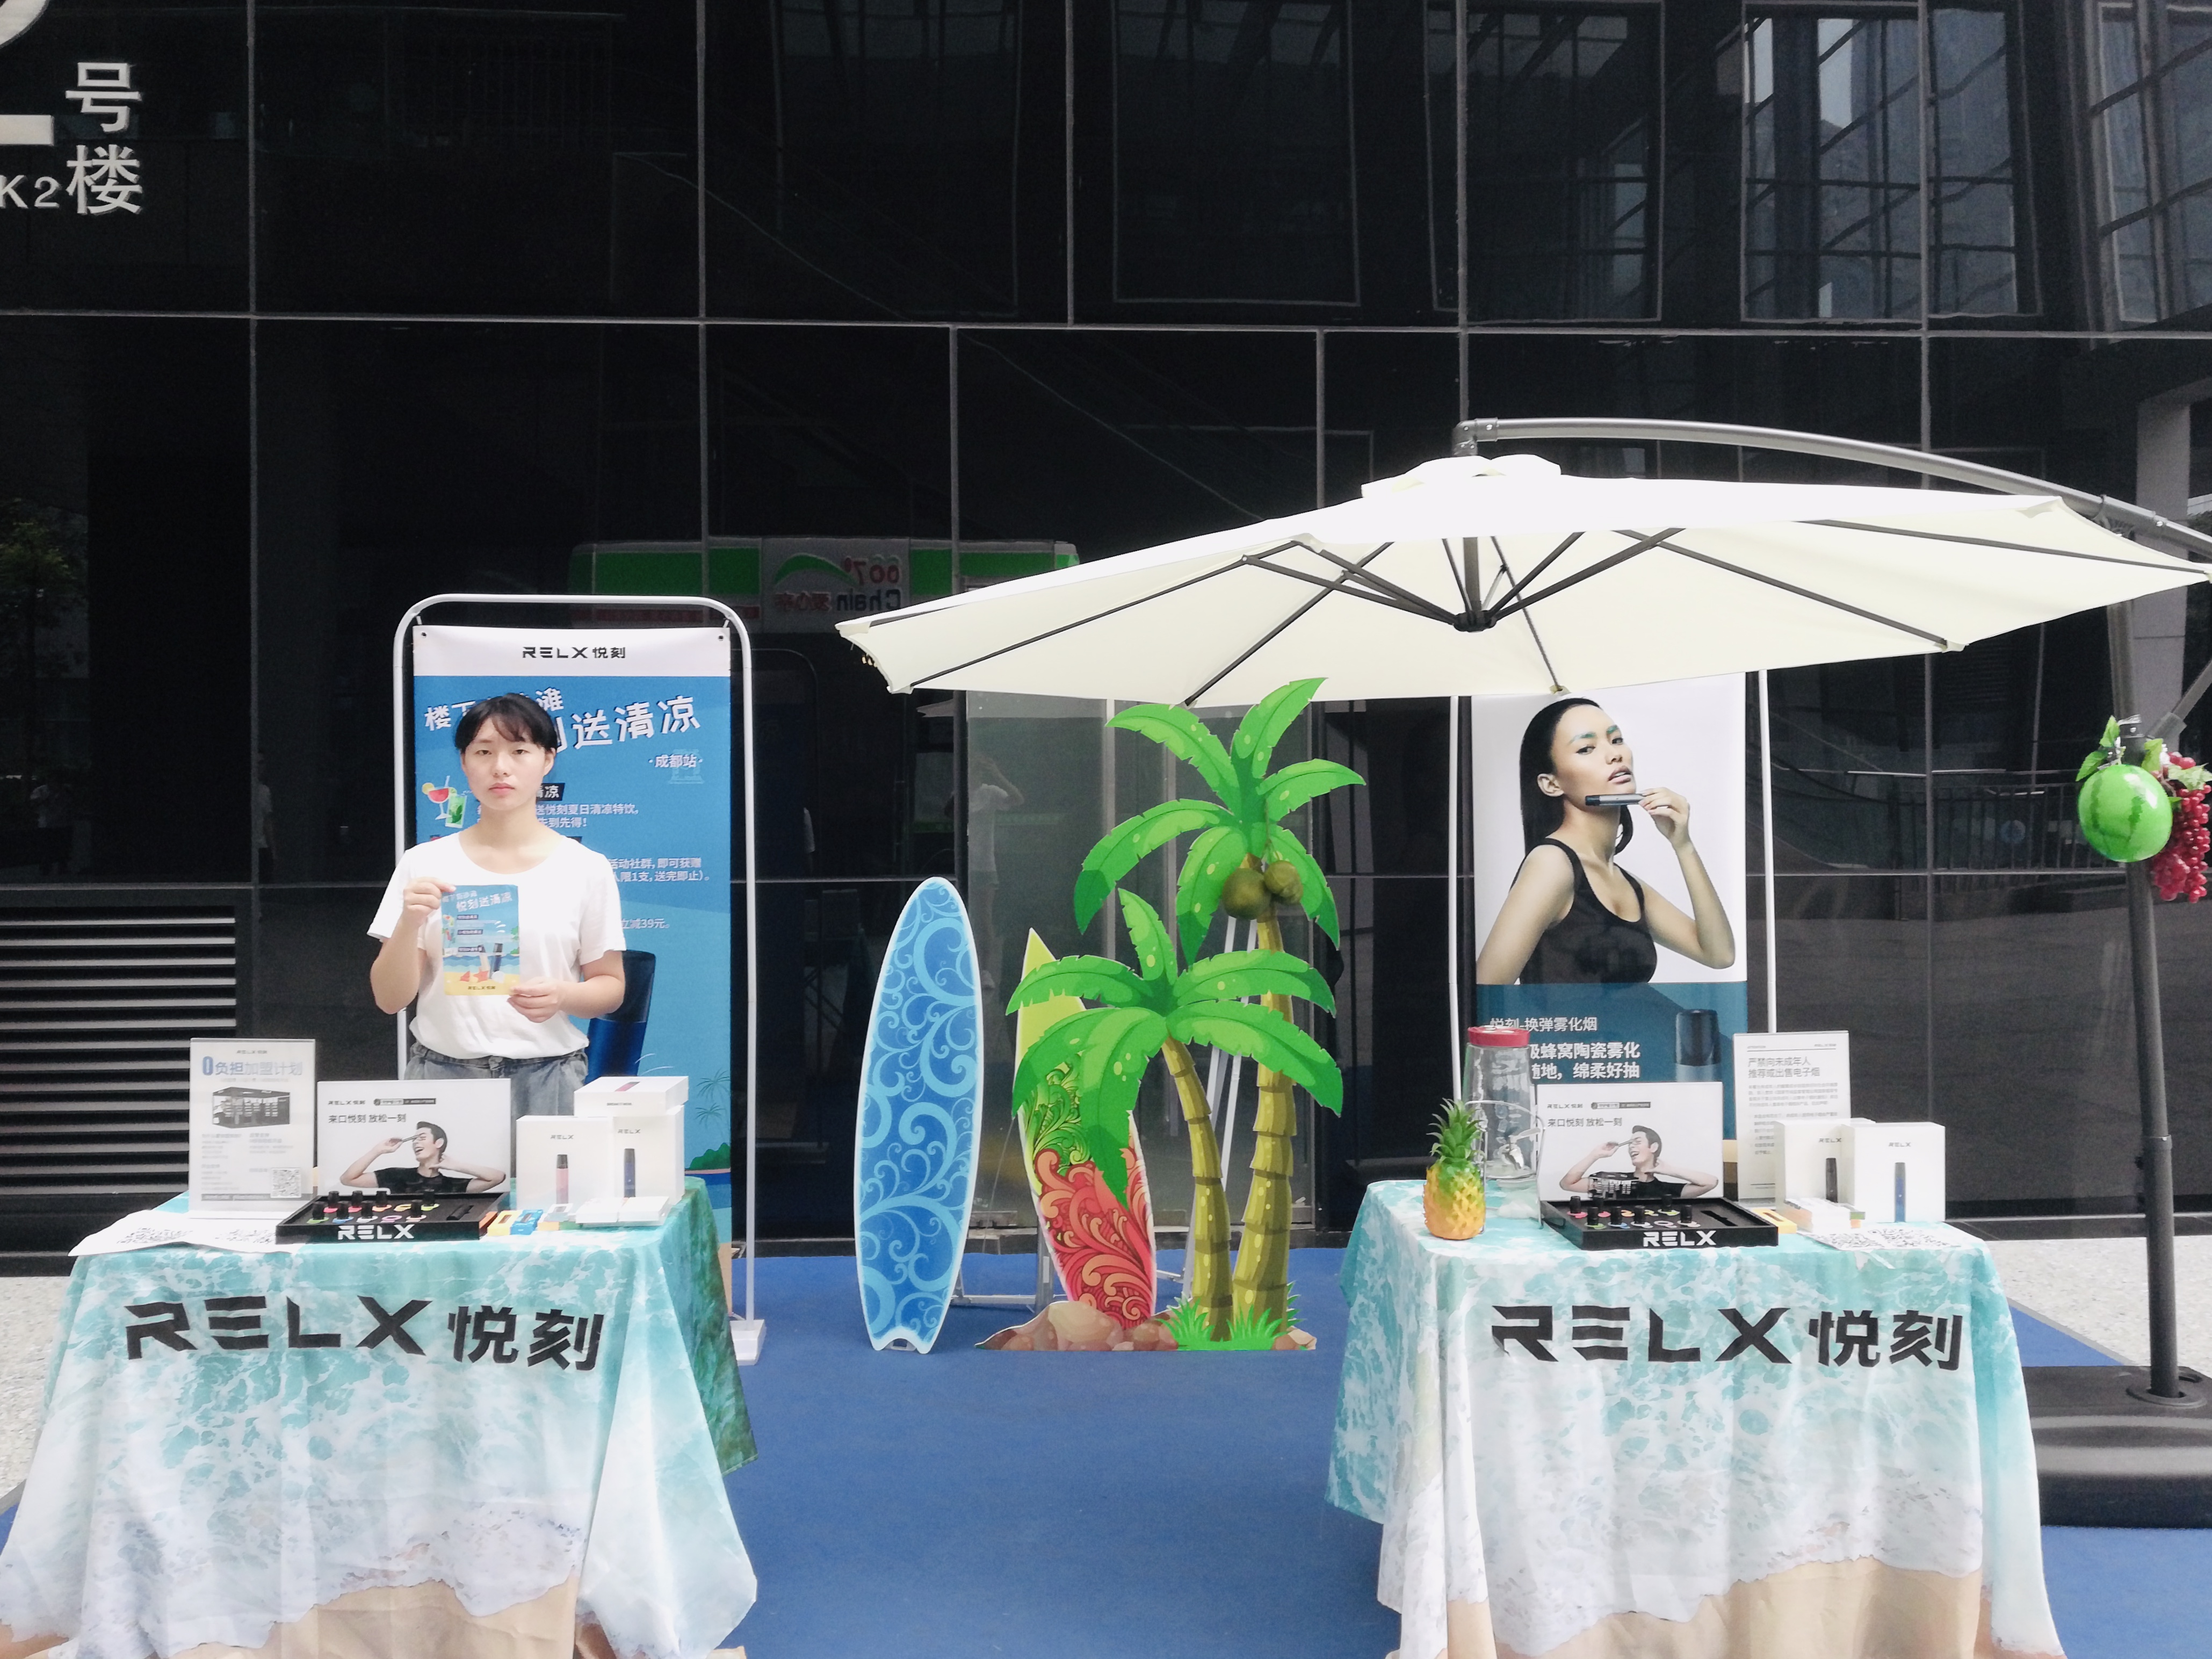 悦刻电子烟品牌推广快闪活动-重庆服务贸易产业园